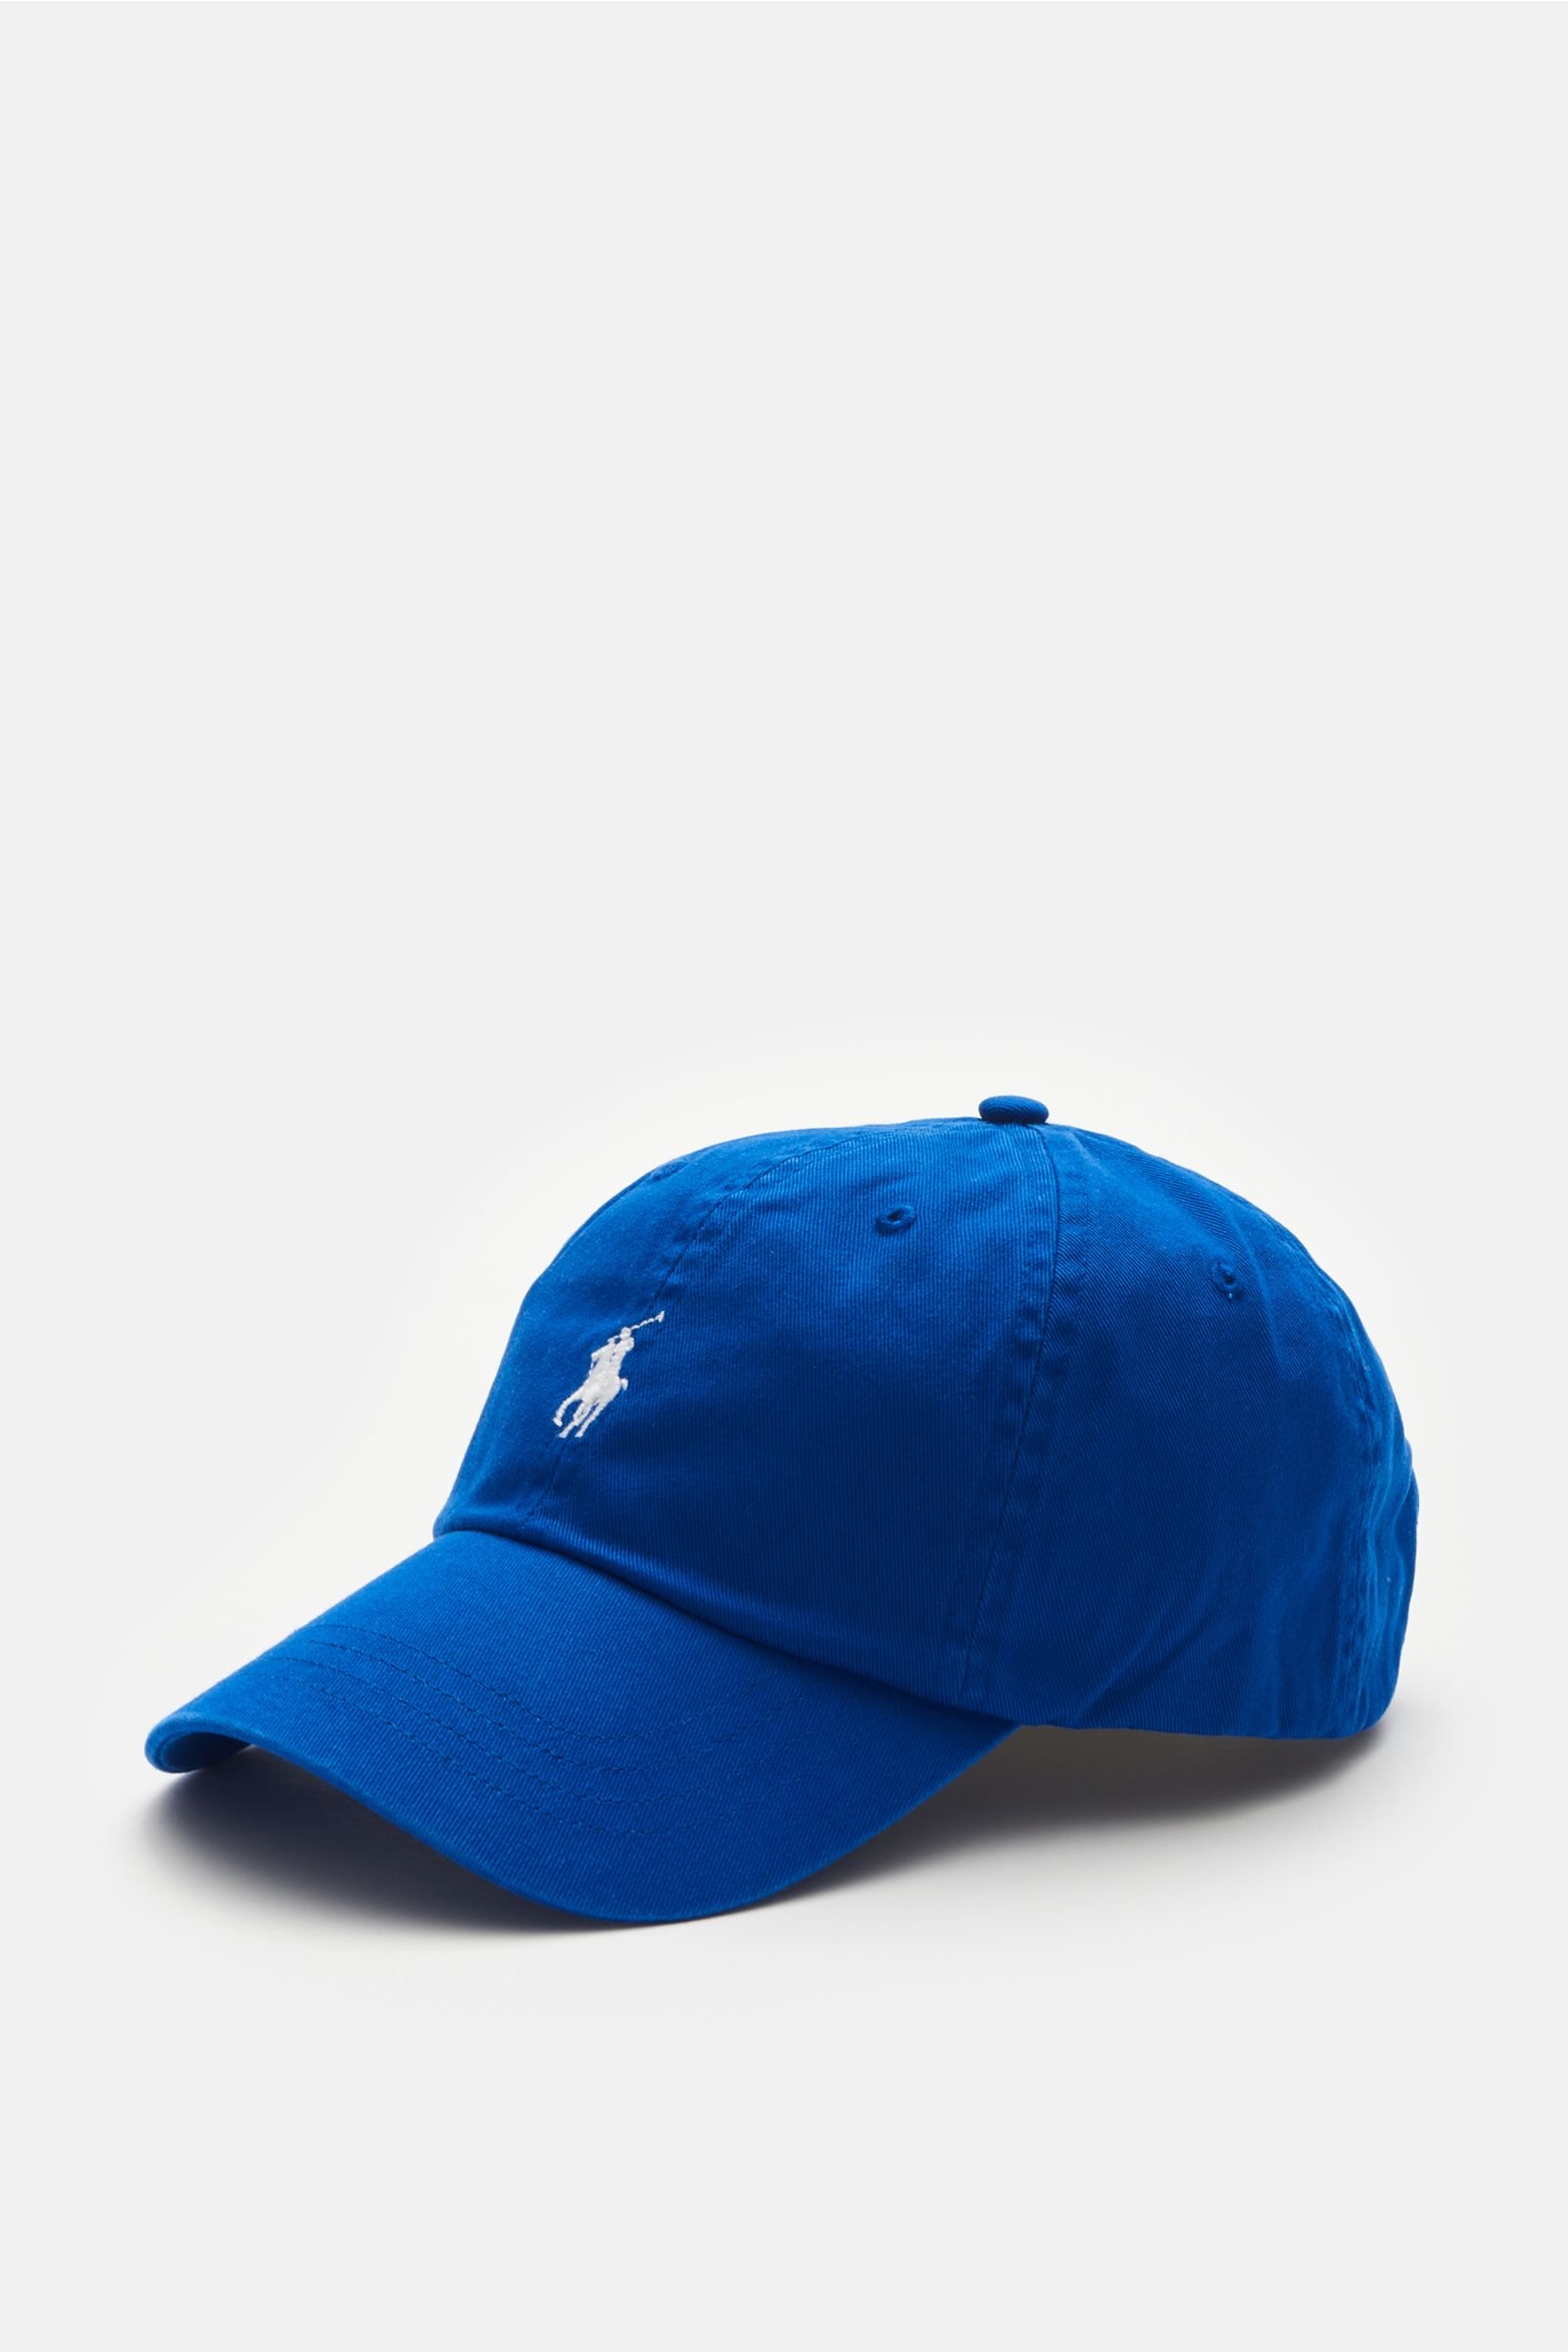 Baseball cap blue